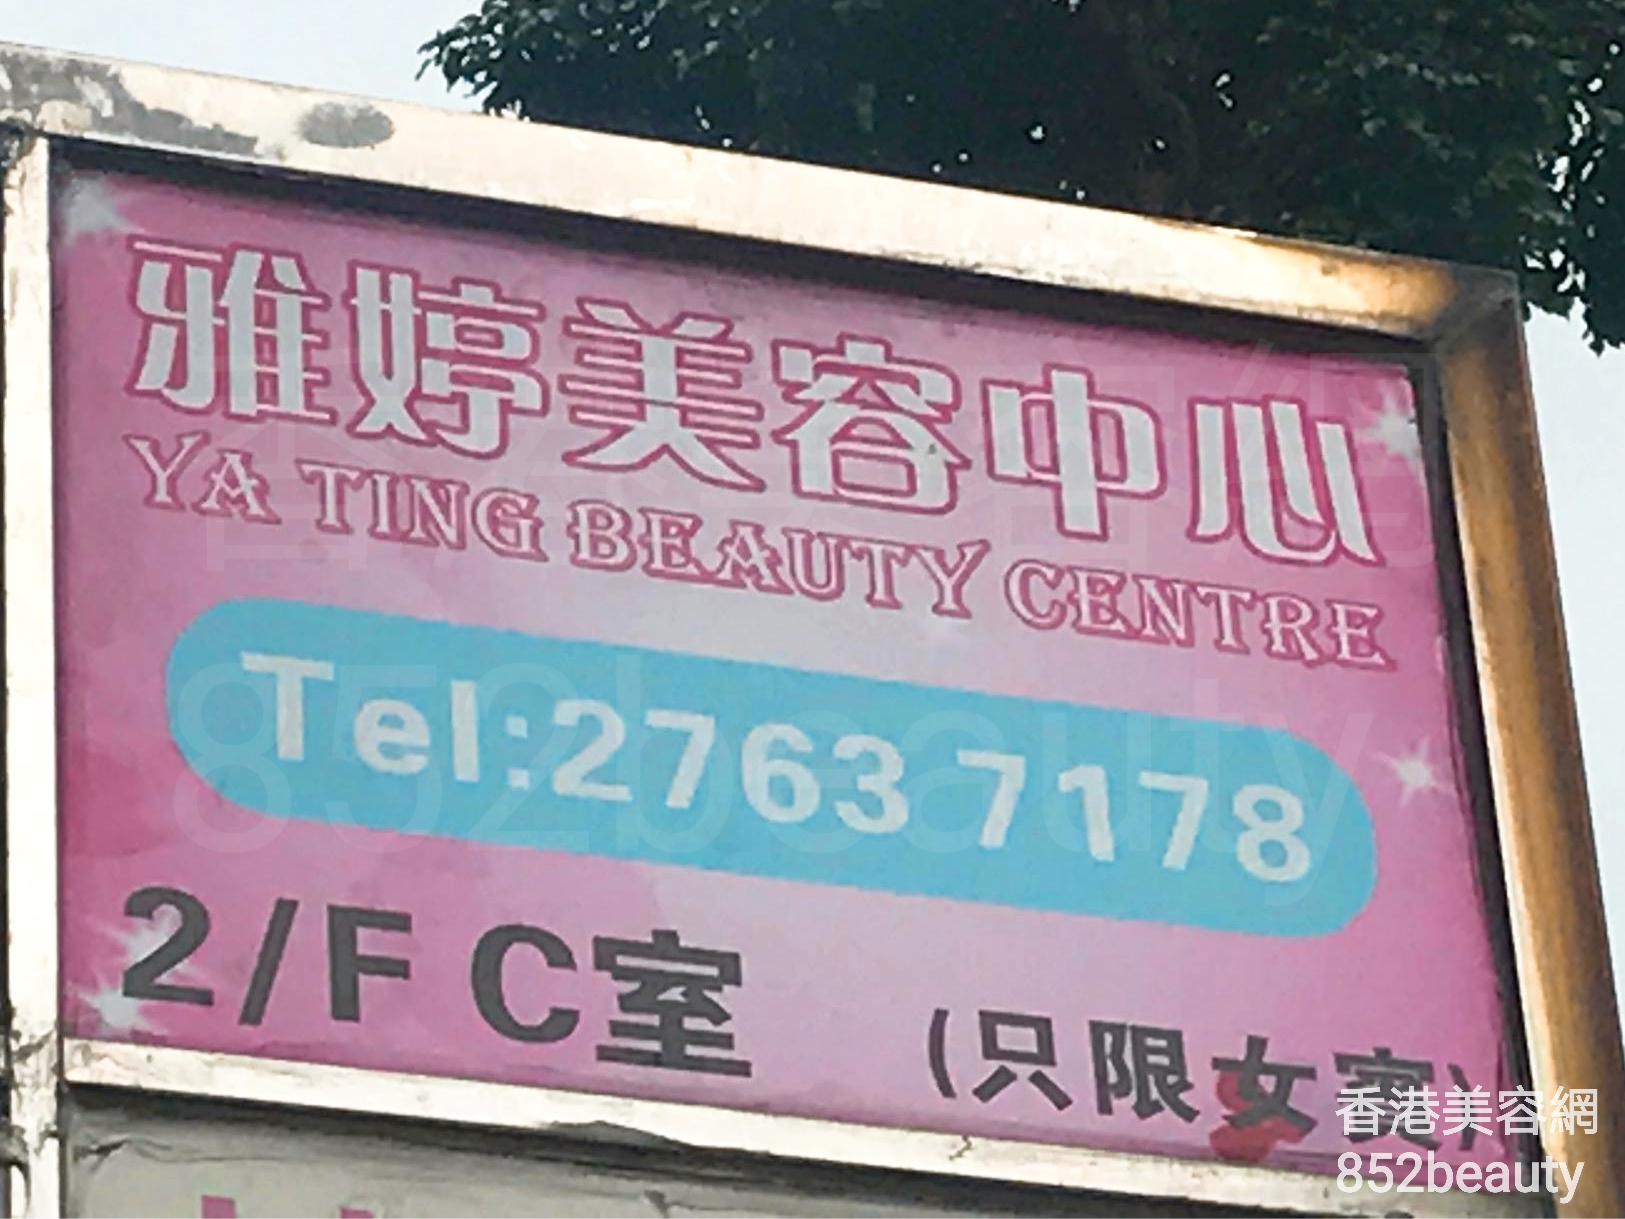 香港美容網 Hong Kong Beauty Salon 美容院 / 美容師: 雅婷美容中心 Ya Ting Beauty Centre